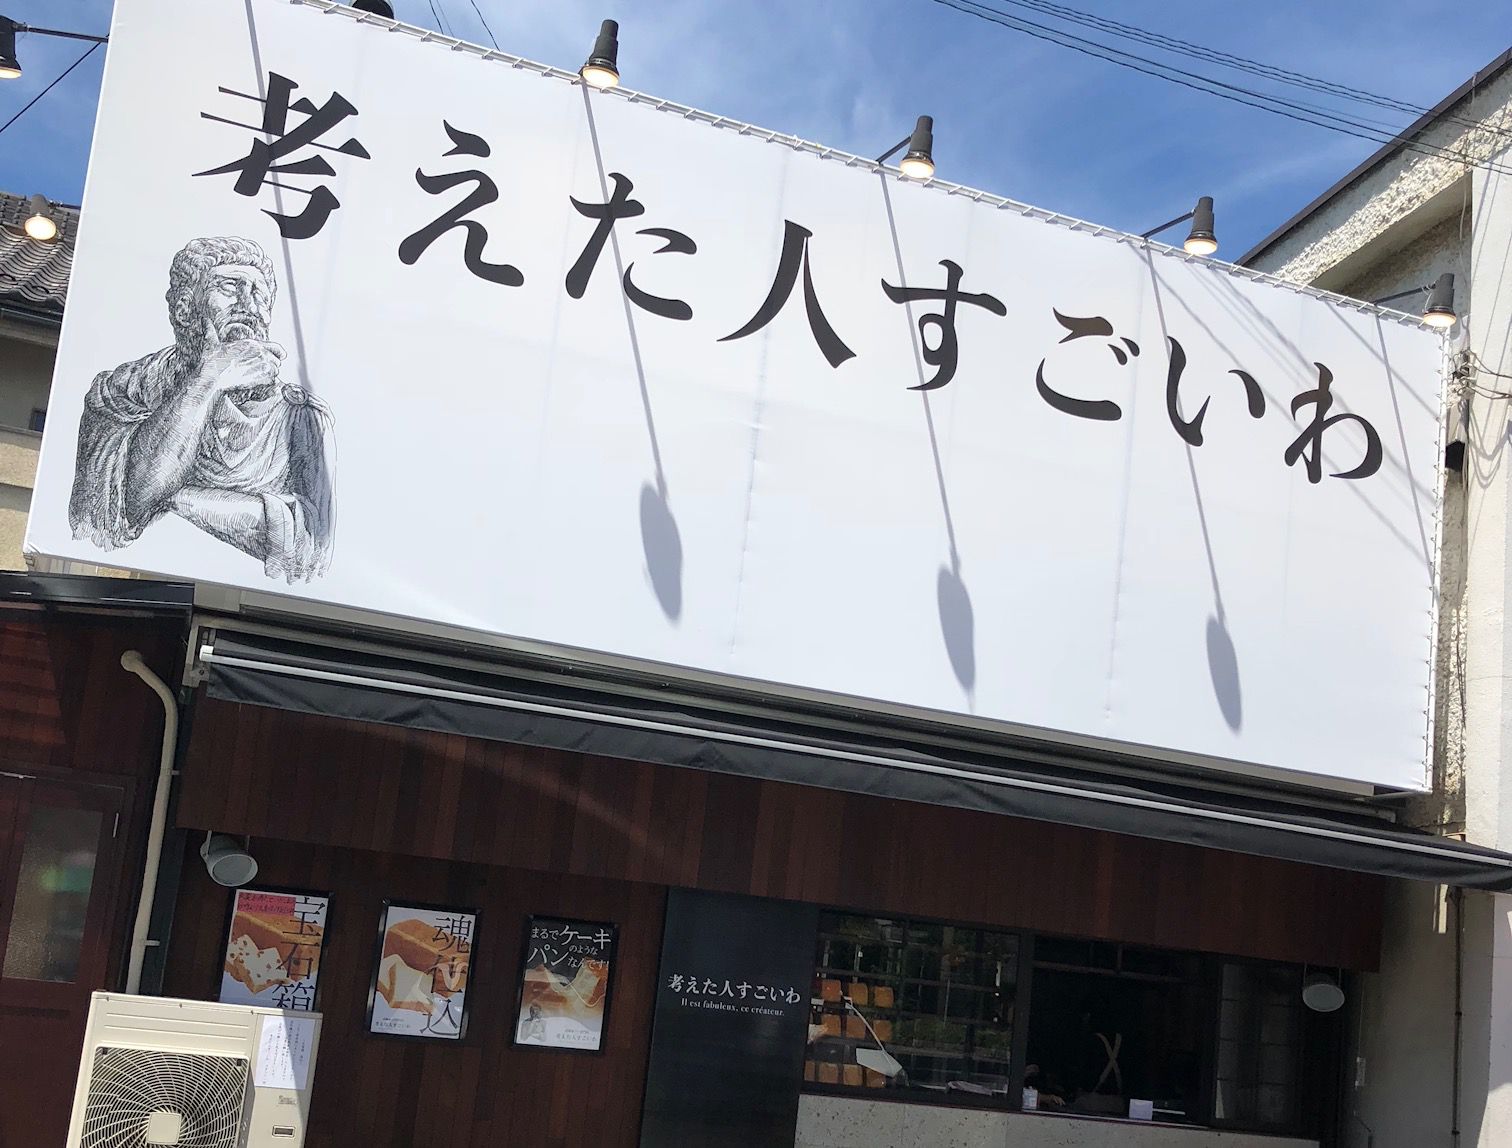 遊びゴコロに 参りました 東京のユニークな名前のグルメ店7選 Retrip リトリップ